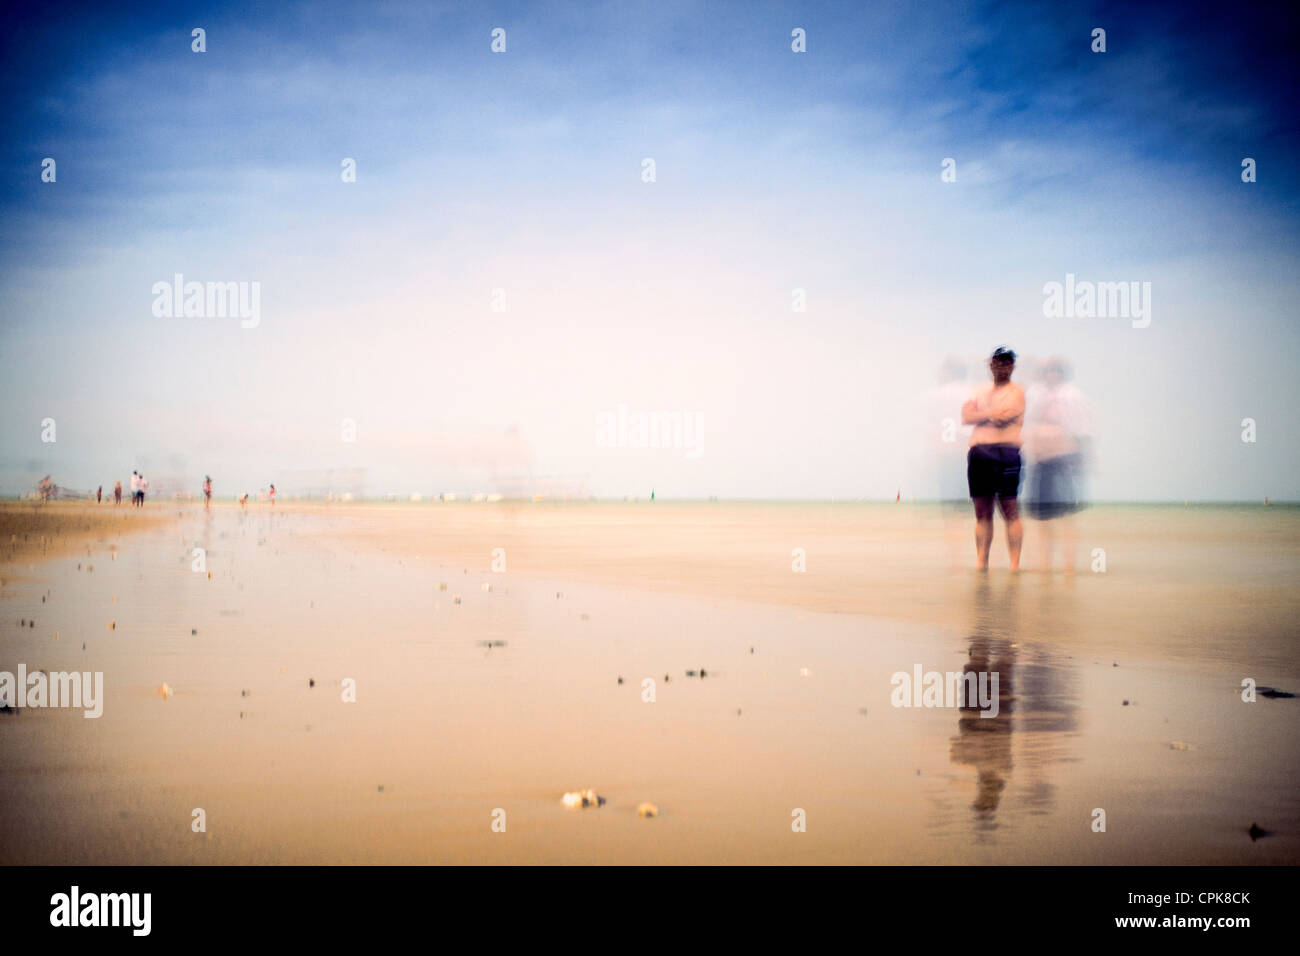 Menschen am Strand, Sanlucar de Barrameda, Spanien. Tageslicht Langzeitbelichtung geschossen durch den Einsatz von Neutralfilter. Stockfoto